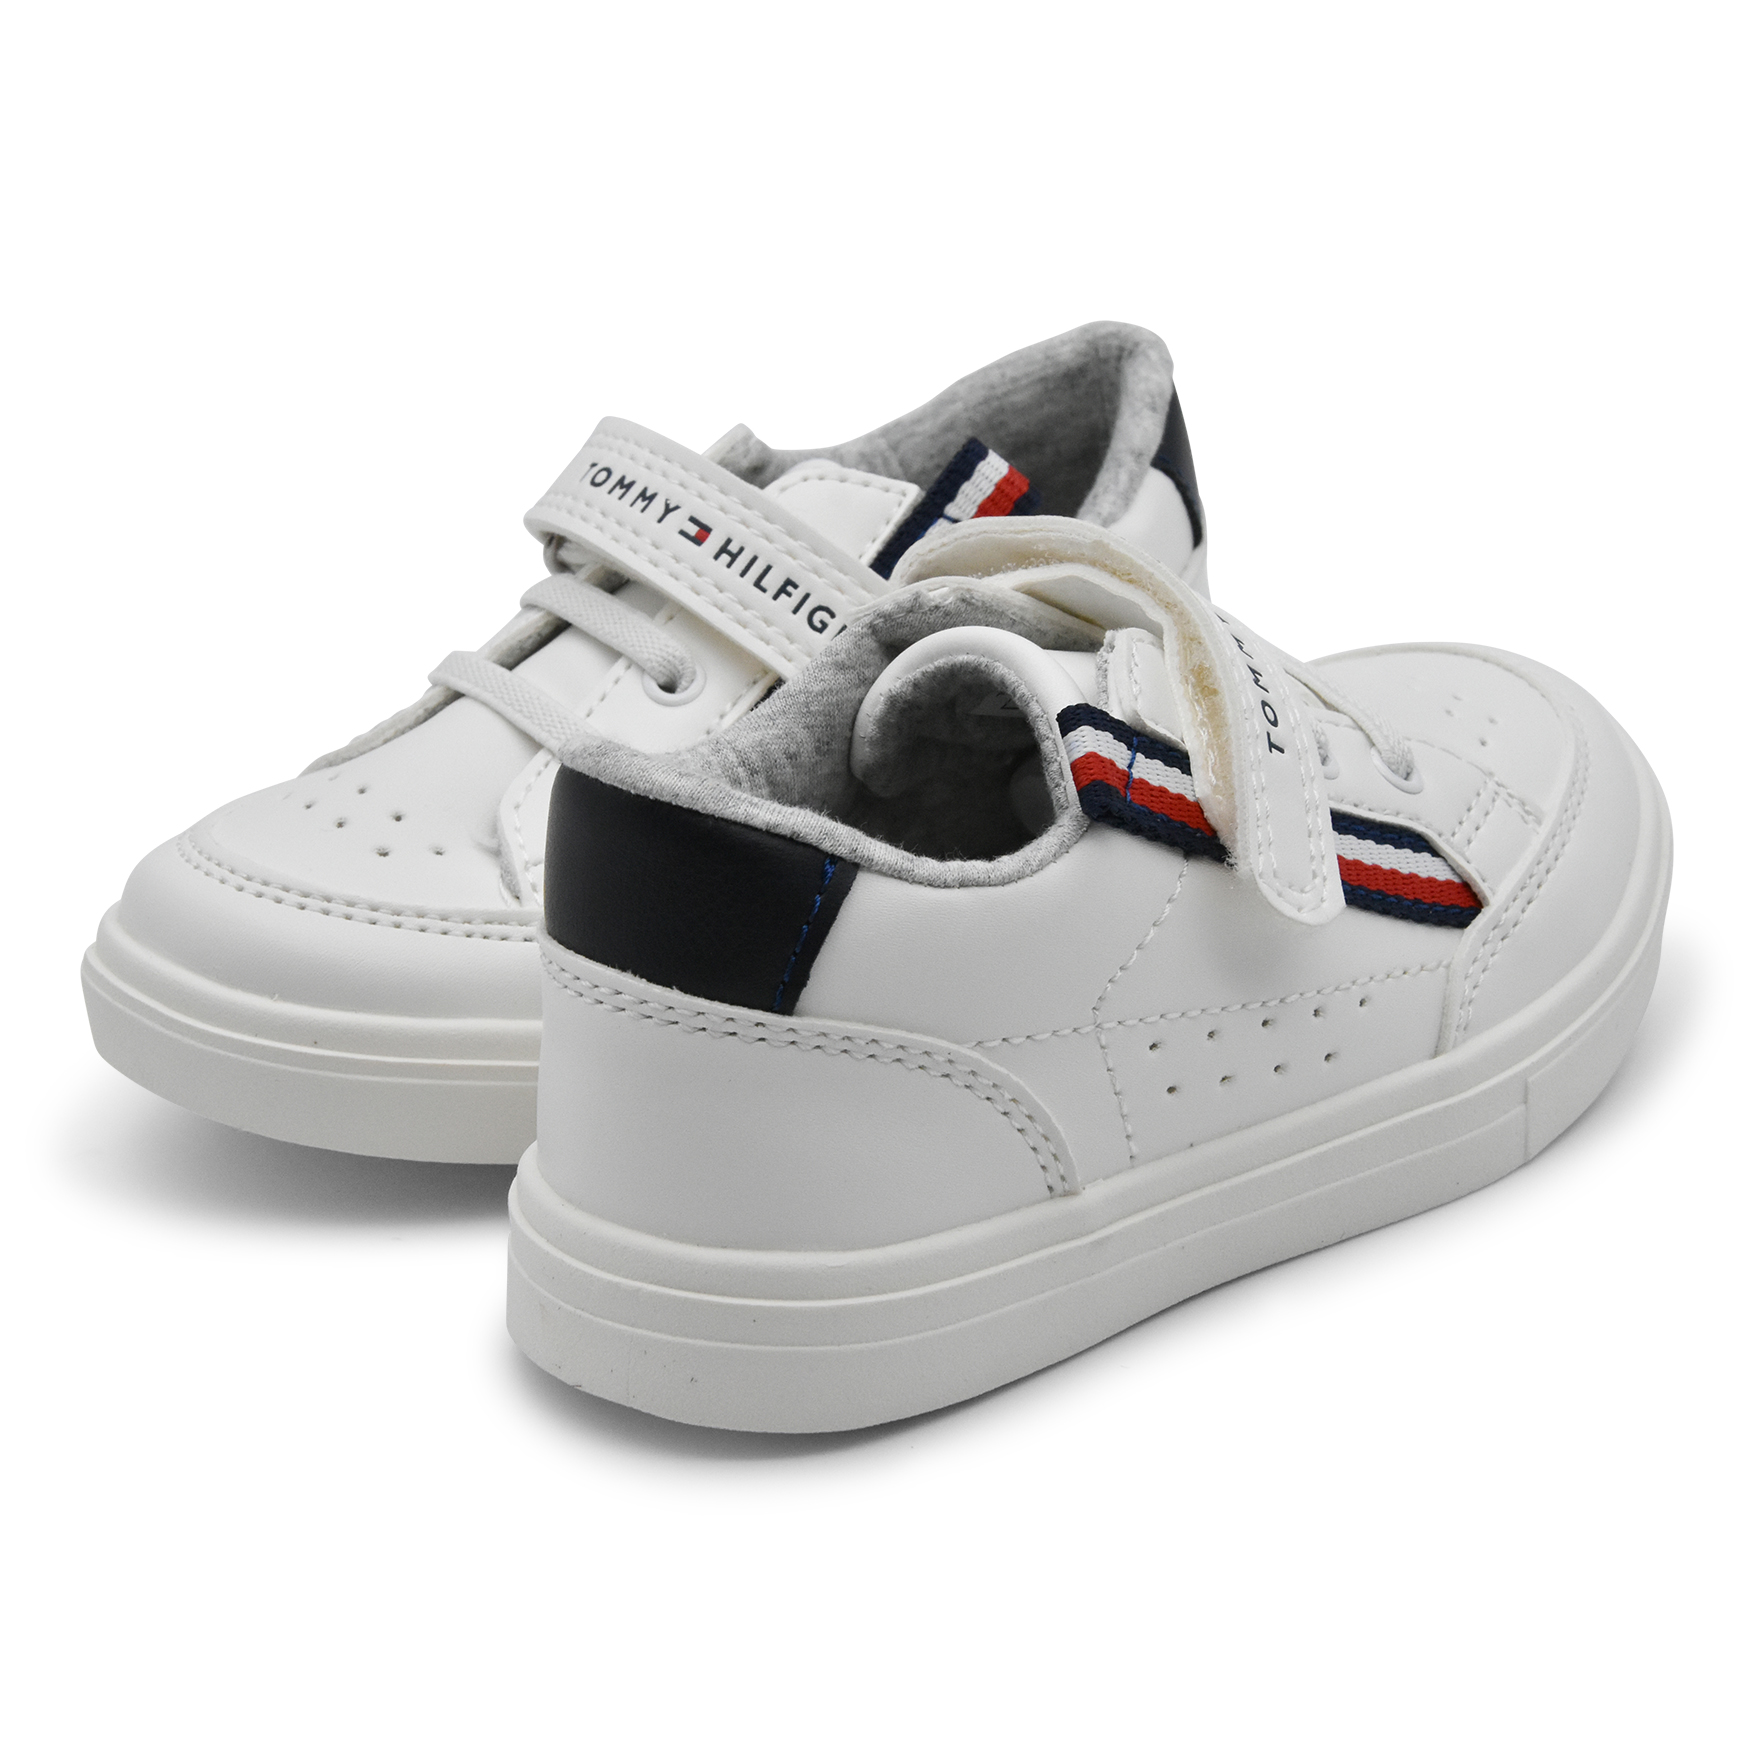 Tommy Hilfiger, sneakers, lacci elasticizzati, velcro, bianco, fascetta Hilf, retro